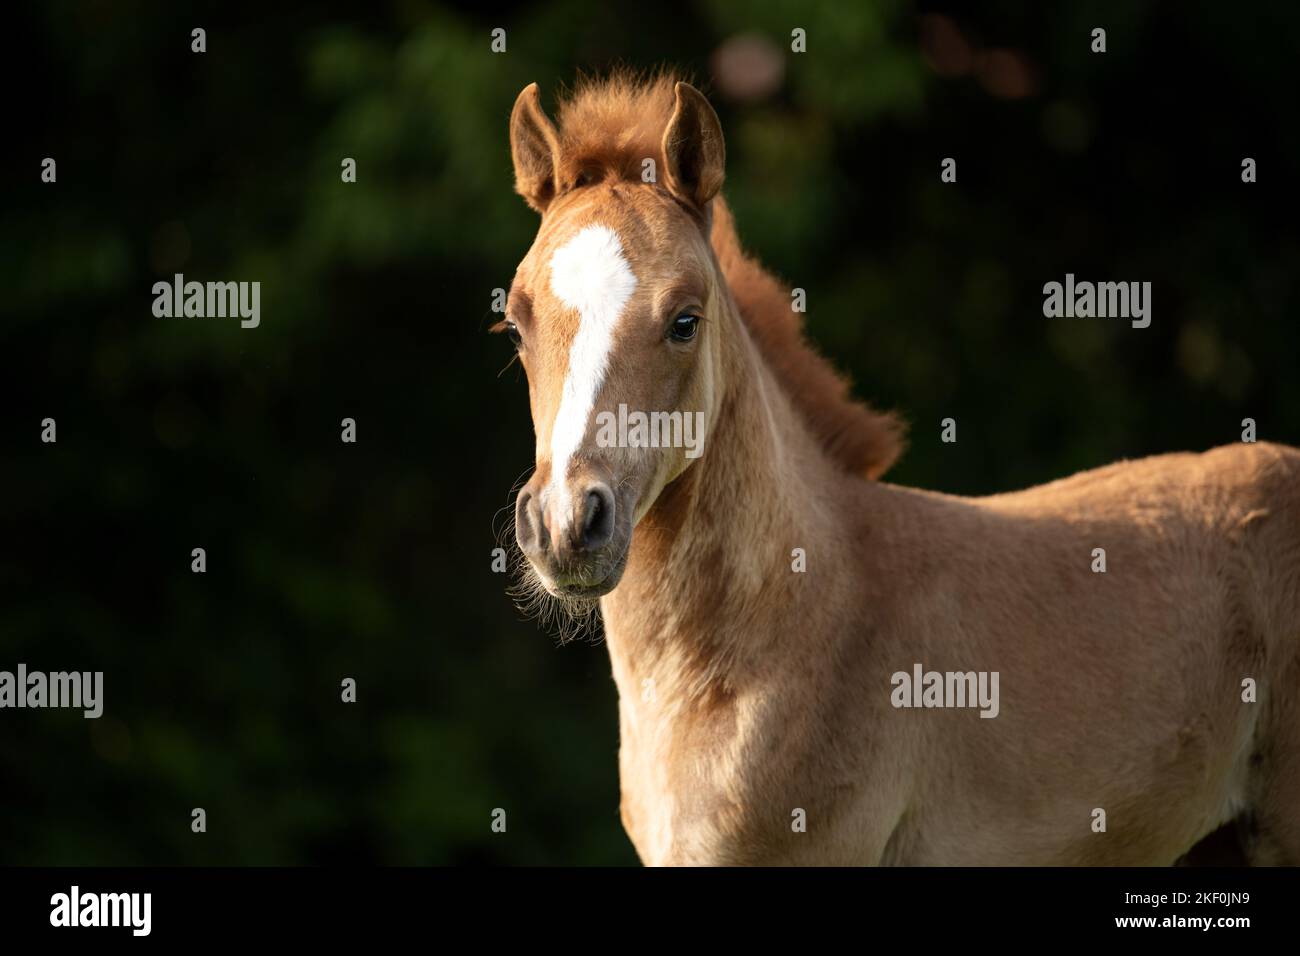 Arabo-Haflinger portrait Stock Photo